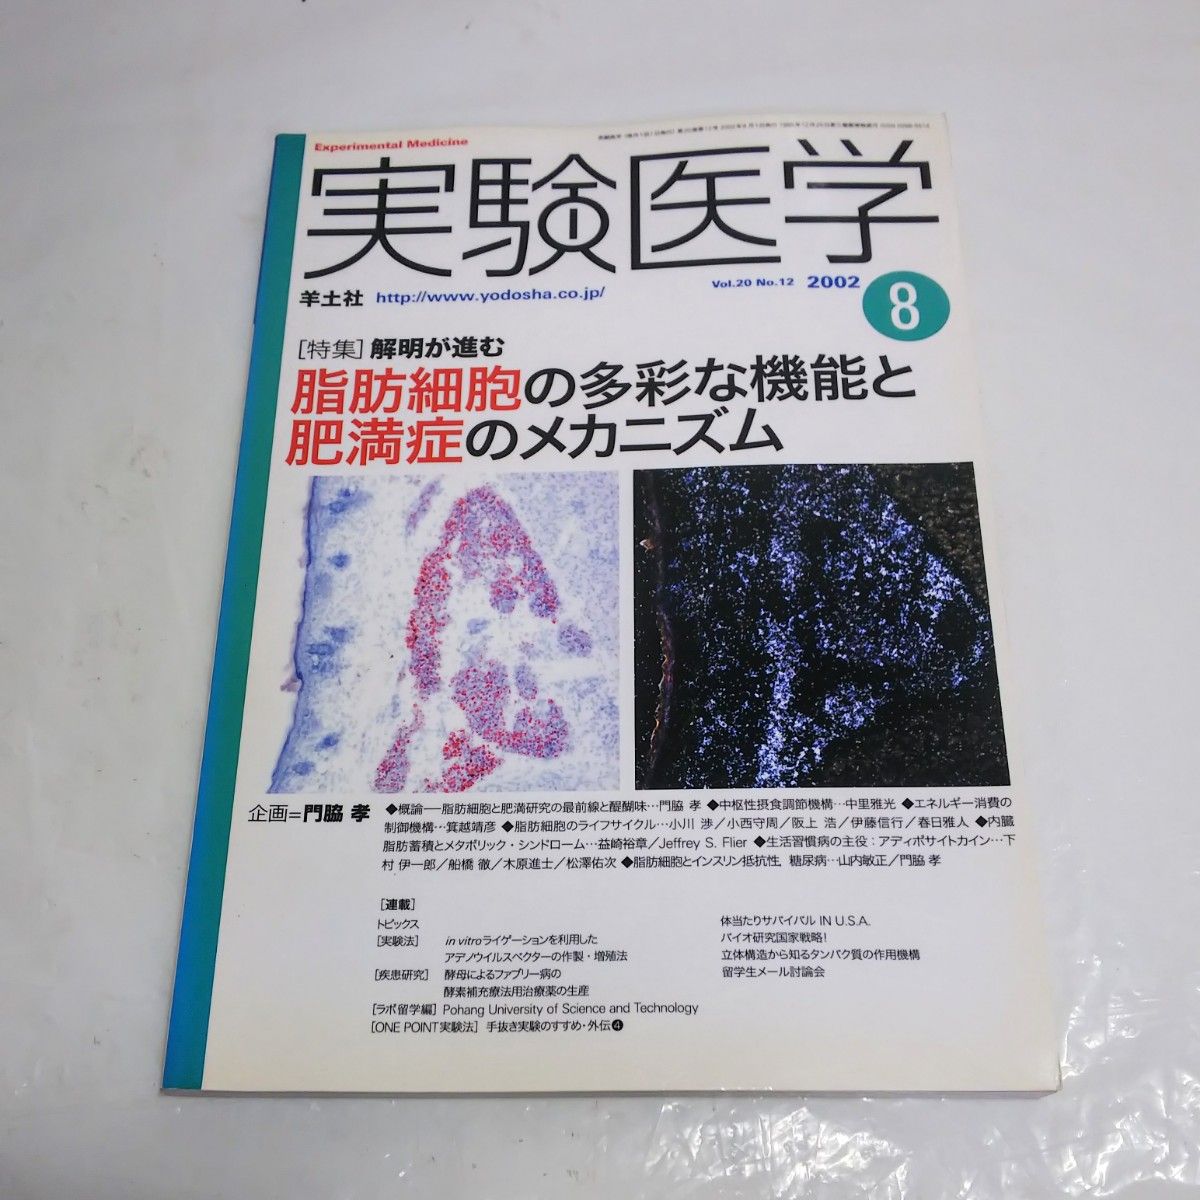 実験医学 Vol.20 No.12 2002.8 脂肪細胞の多彩な機能と肥満症のメカニズム 羊土社